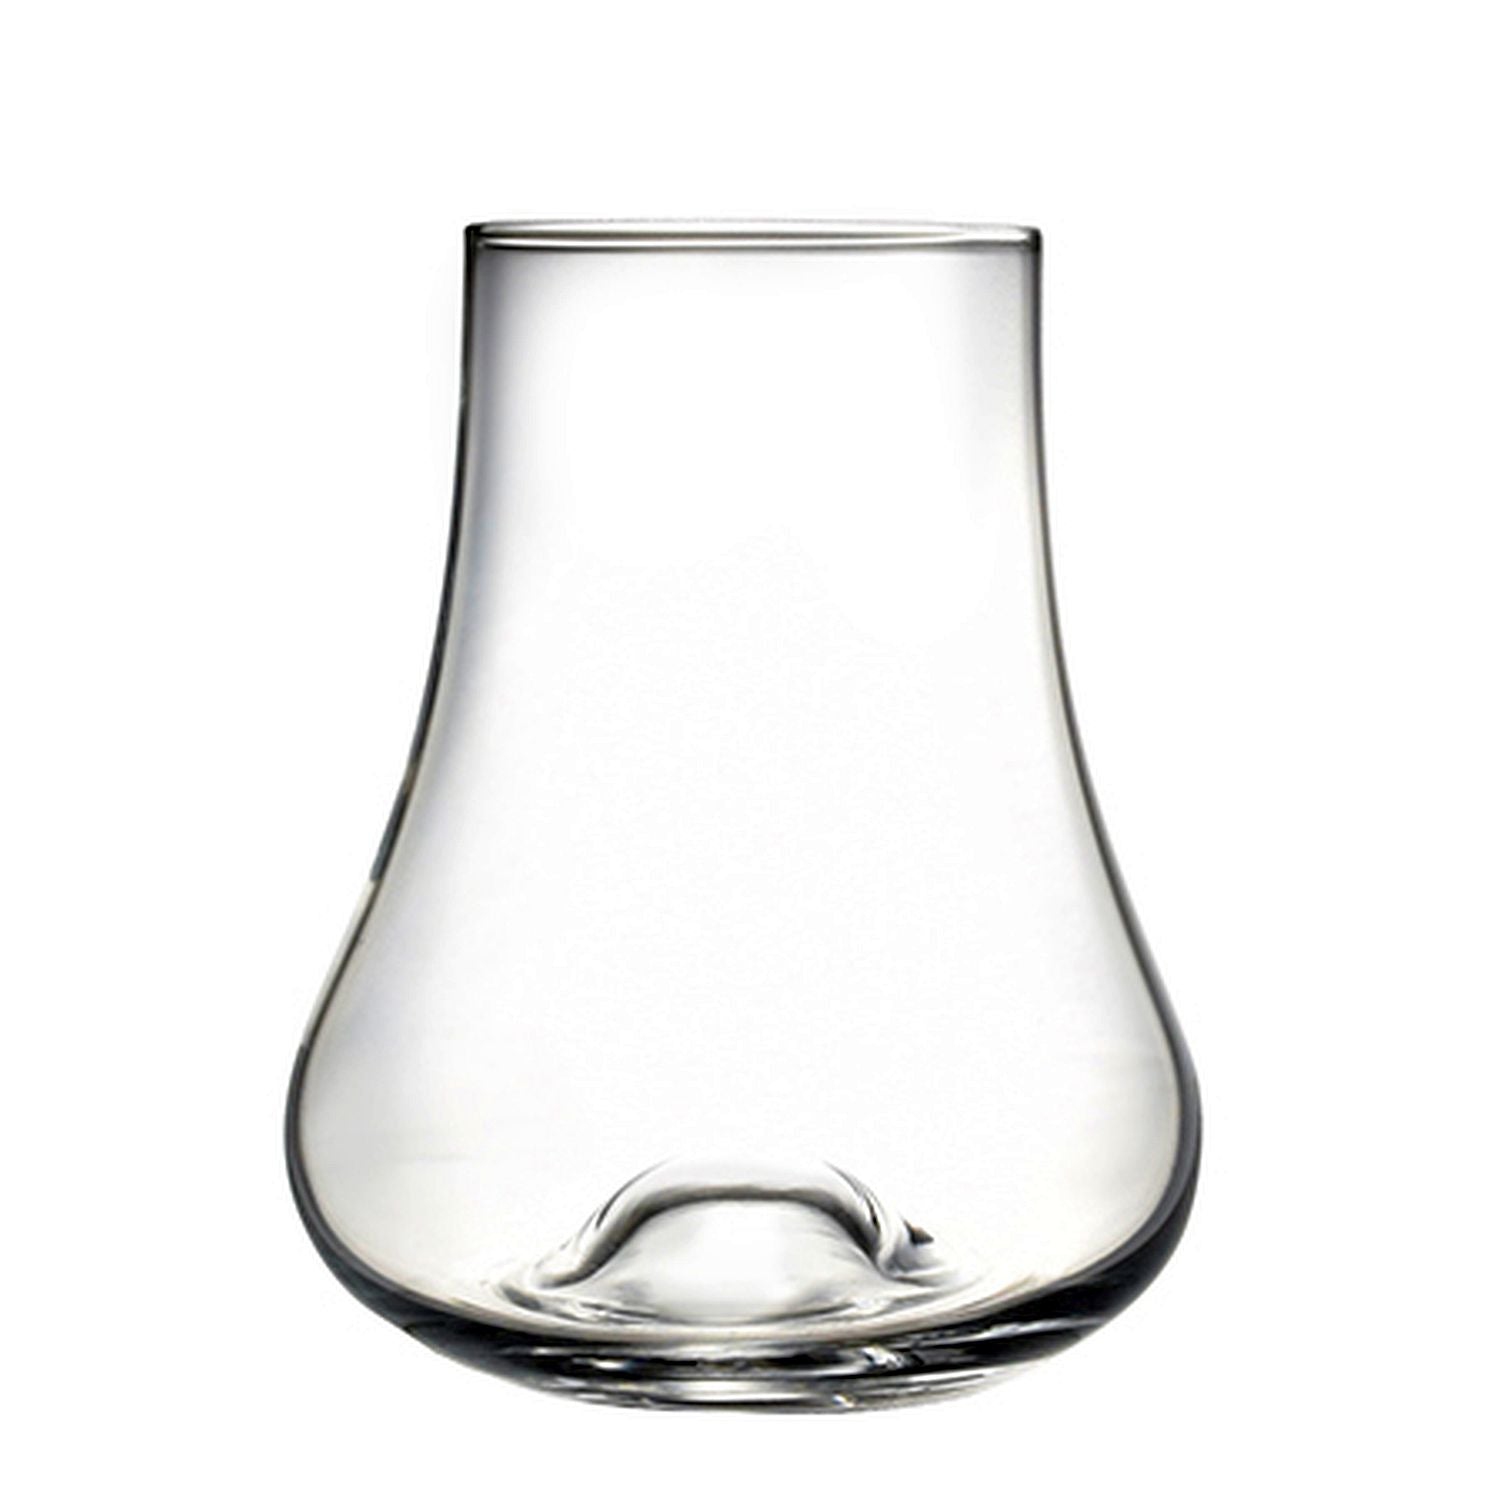 Cuisivin - Glendale Spirit Tasting Glass